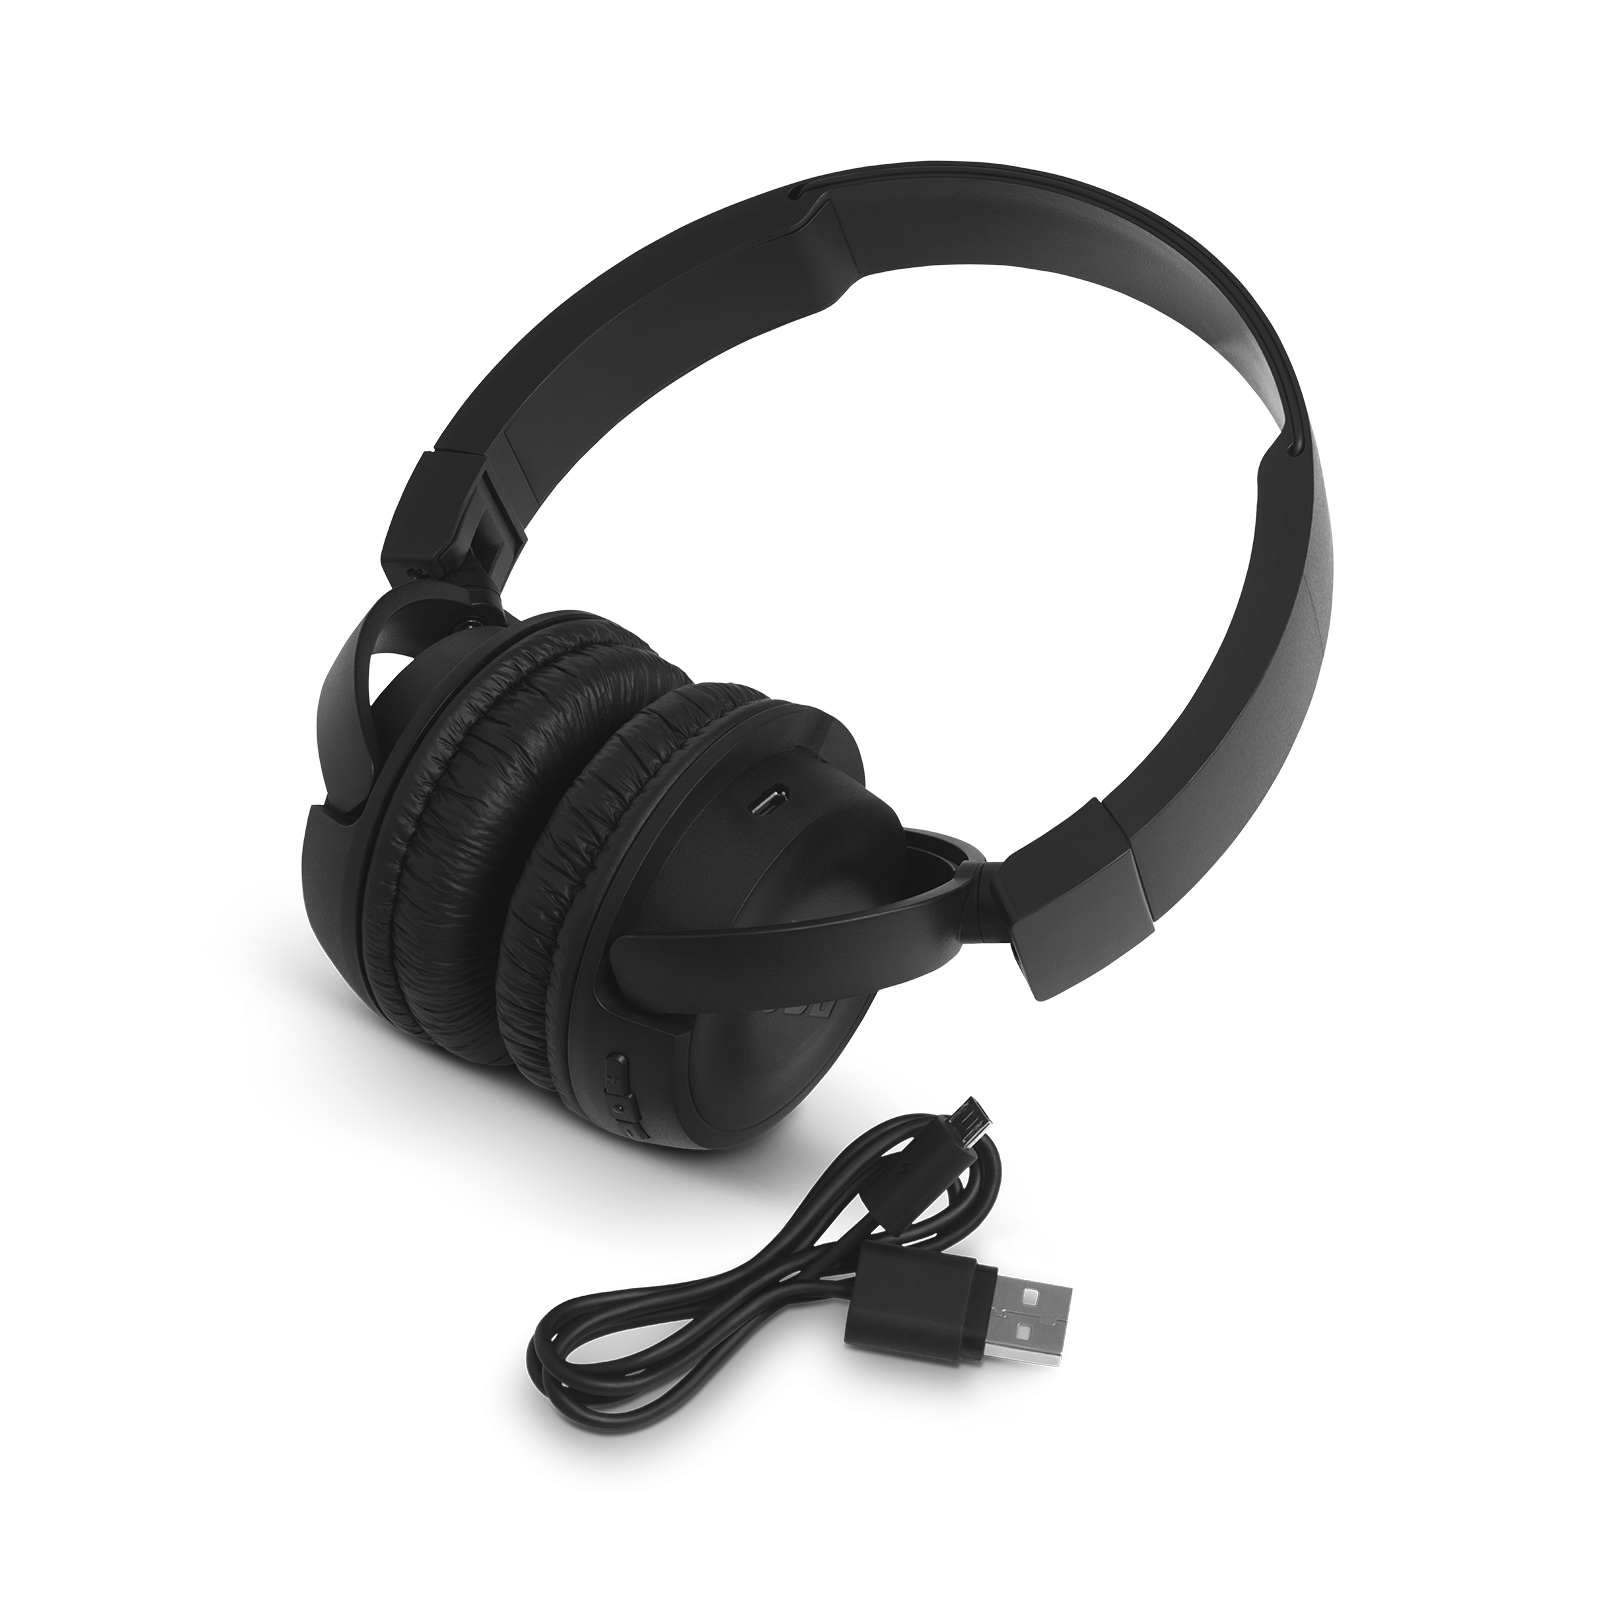 JBL T460BT - Black - Wireless on-ear headphones - Detailshot 2